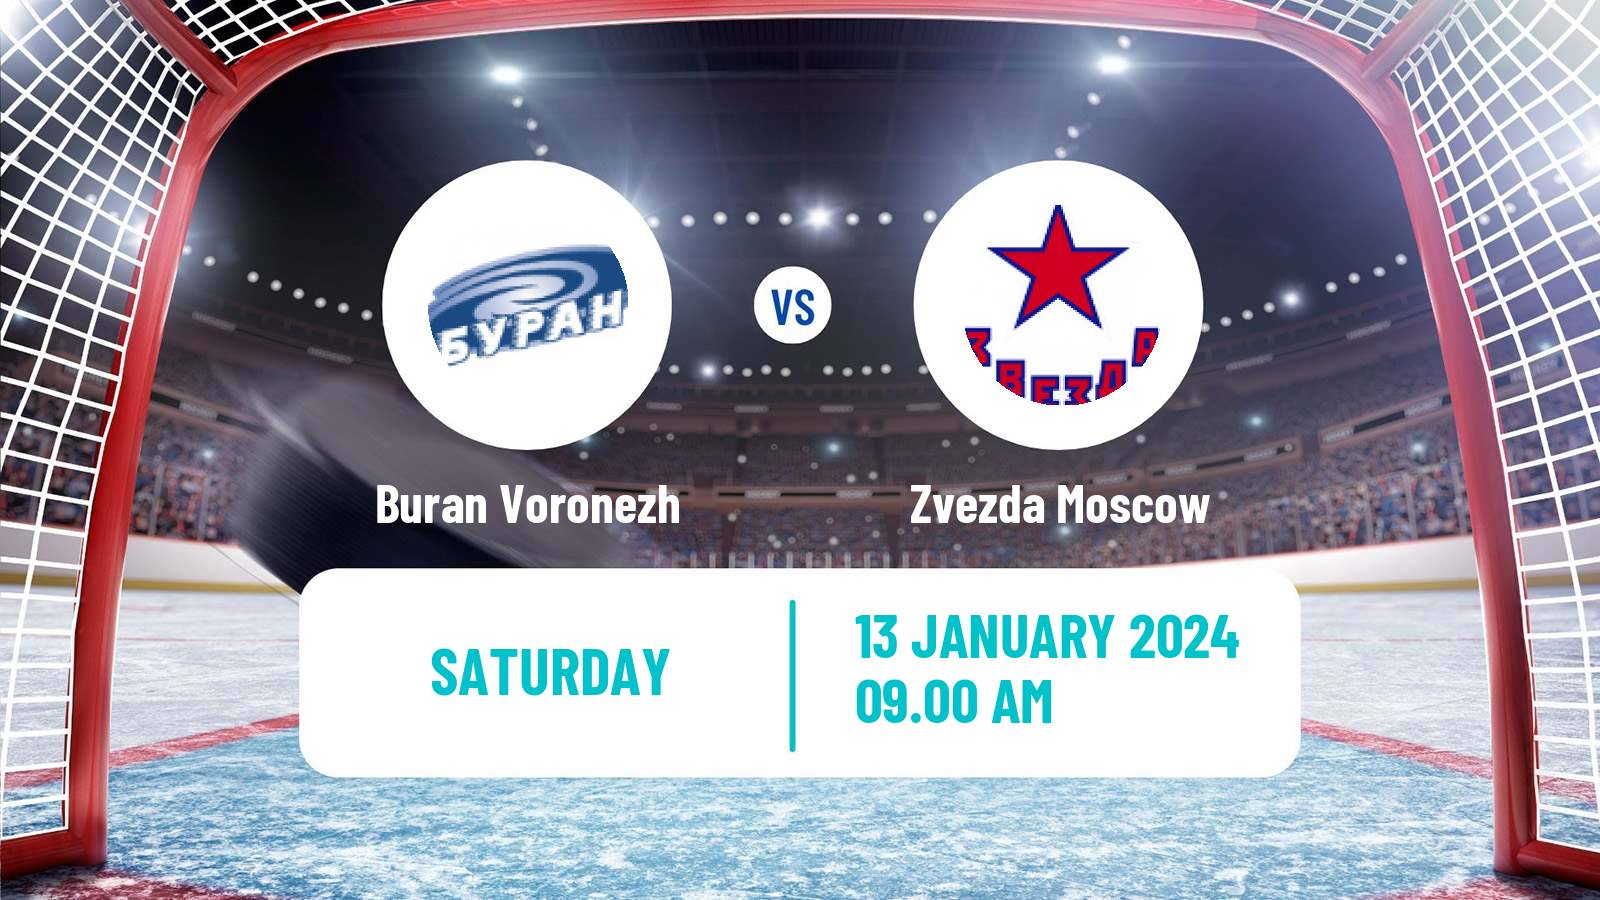 Hockey VHL Buran Voronezh - Zvezda Moscow